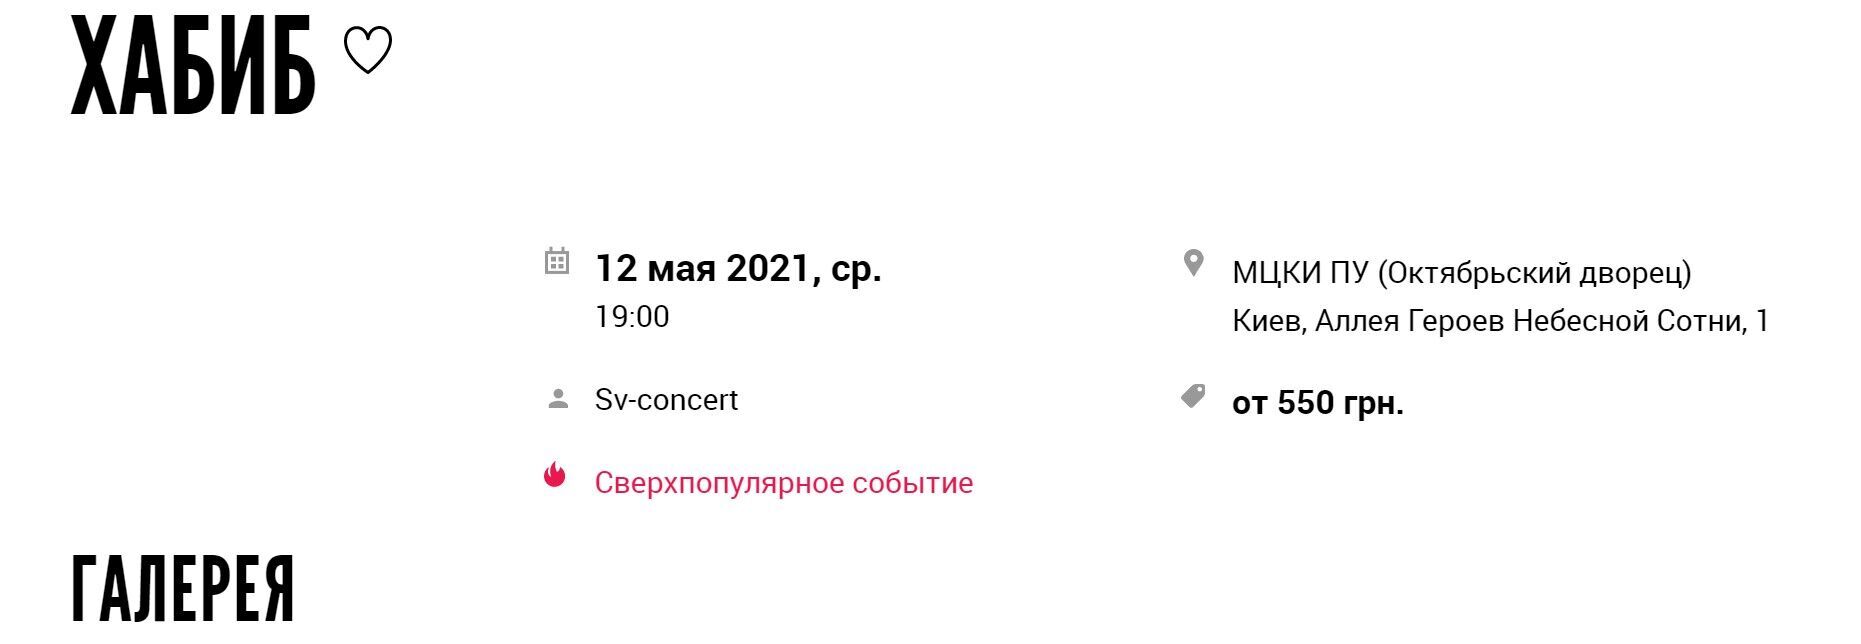 Афиша концерта в Киеве.